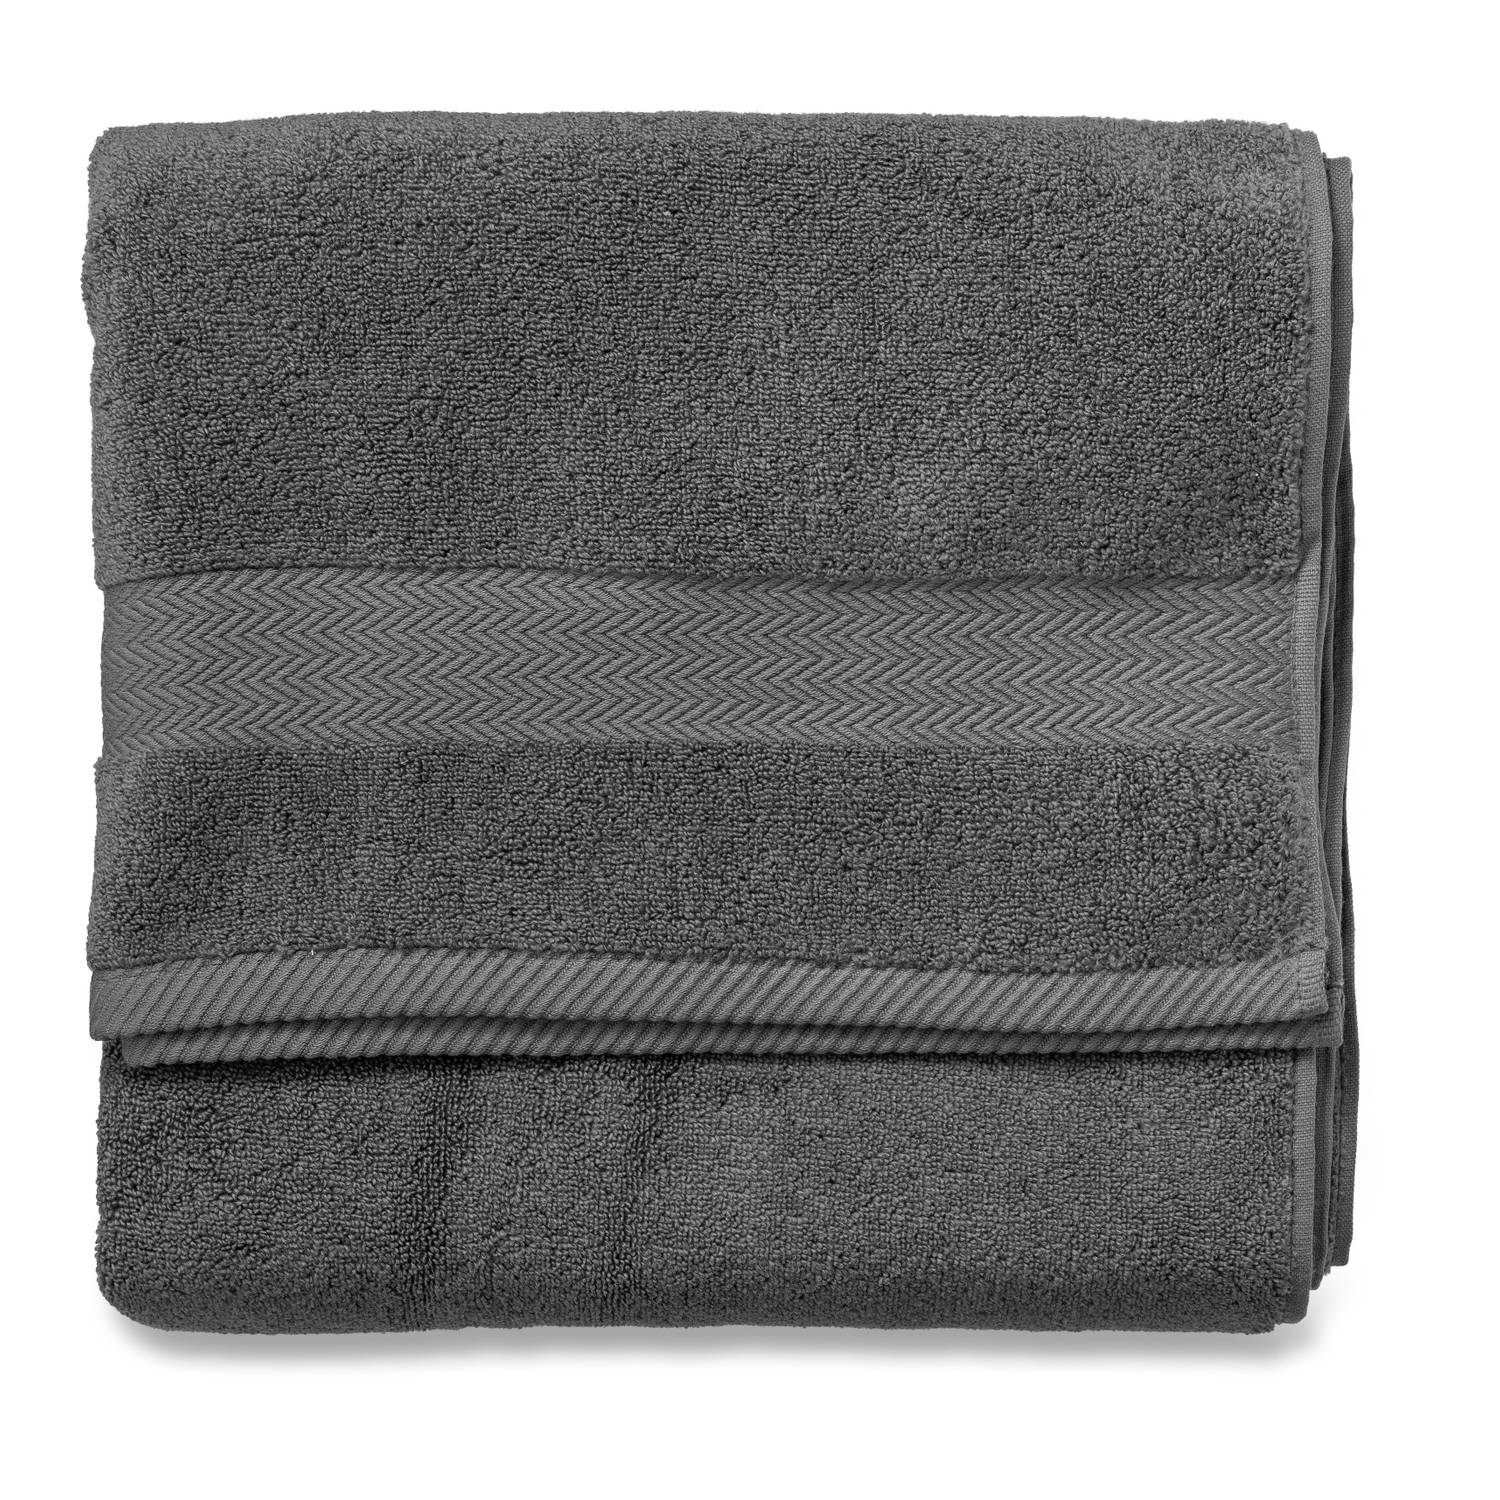 De controle krijgen Hallo gereedschap Blokker handdoek 600g - antraciet - 70x140 cm | Blokker